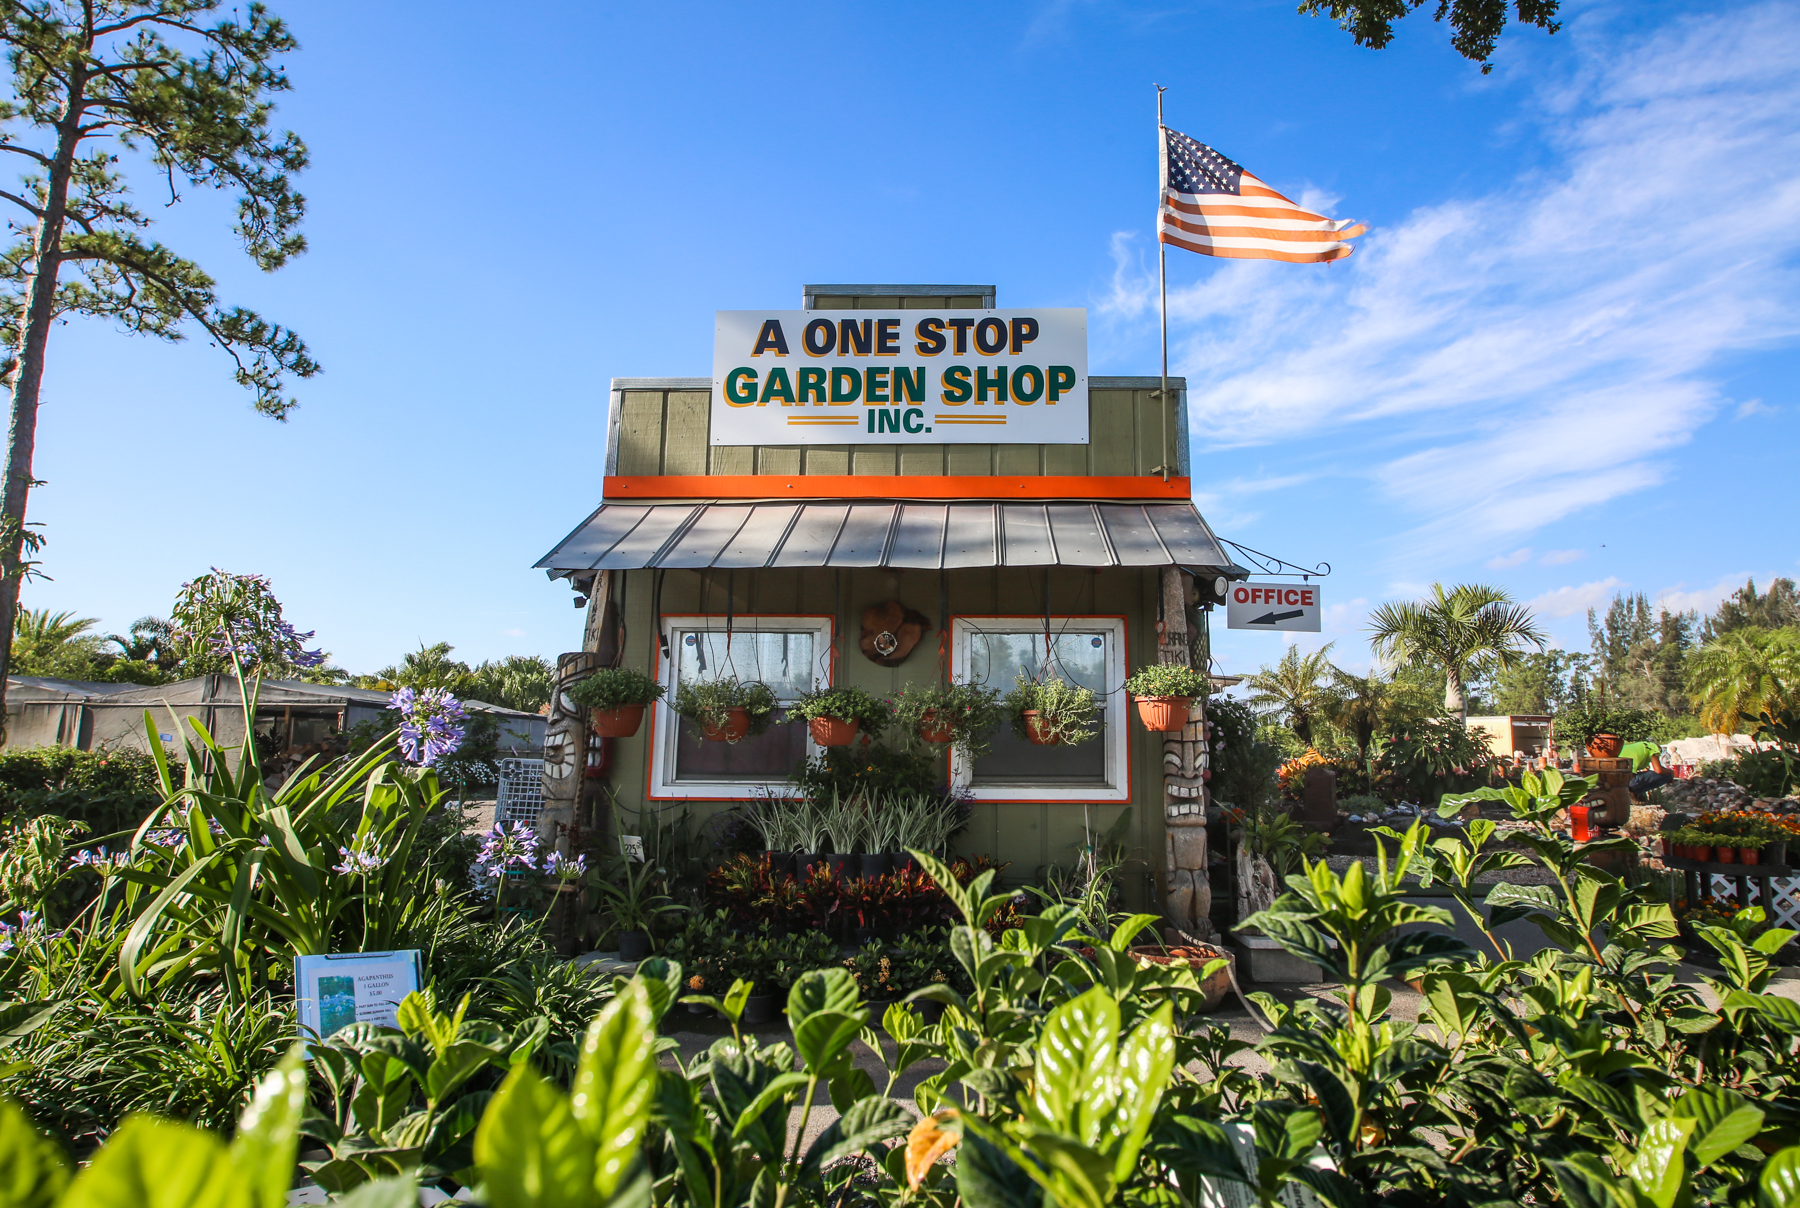 A One Stop Garden Shop Inc.